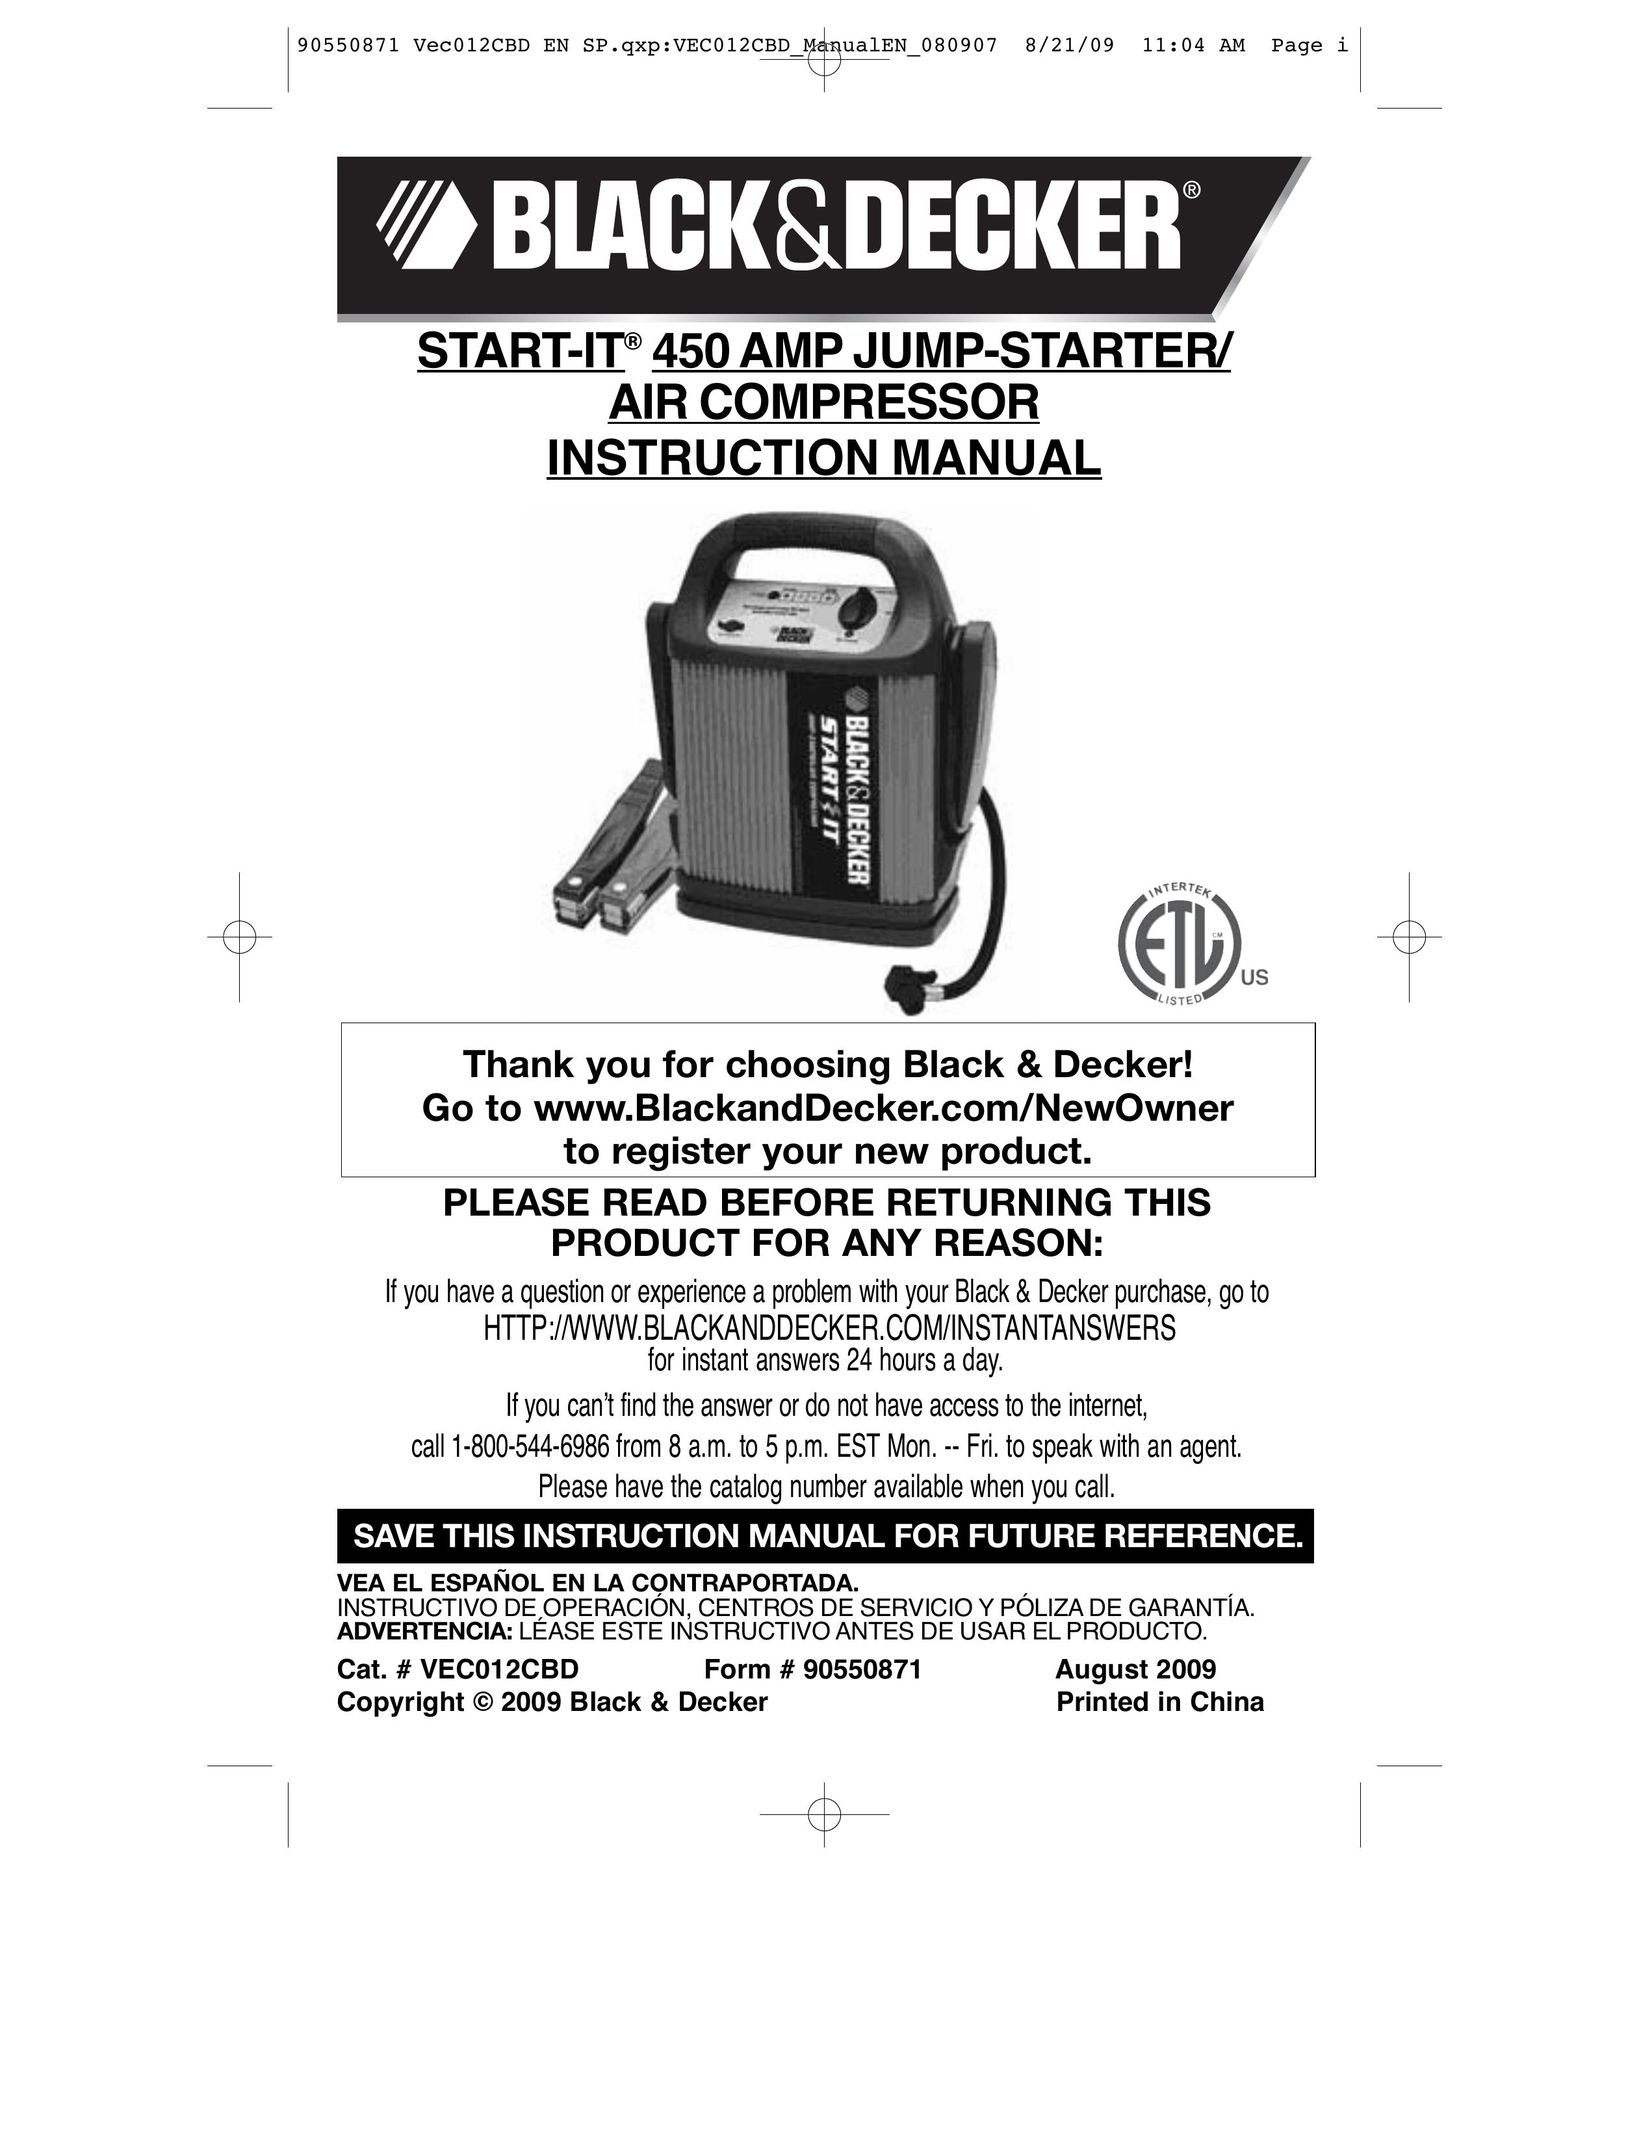 Black & Decker VEC012CBD Air Compressor User Manual